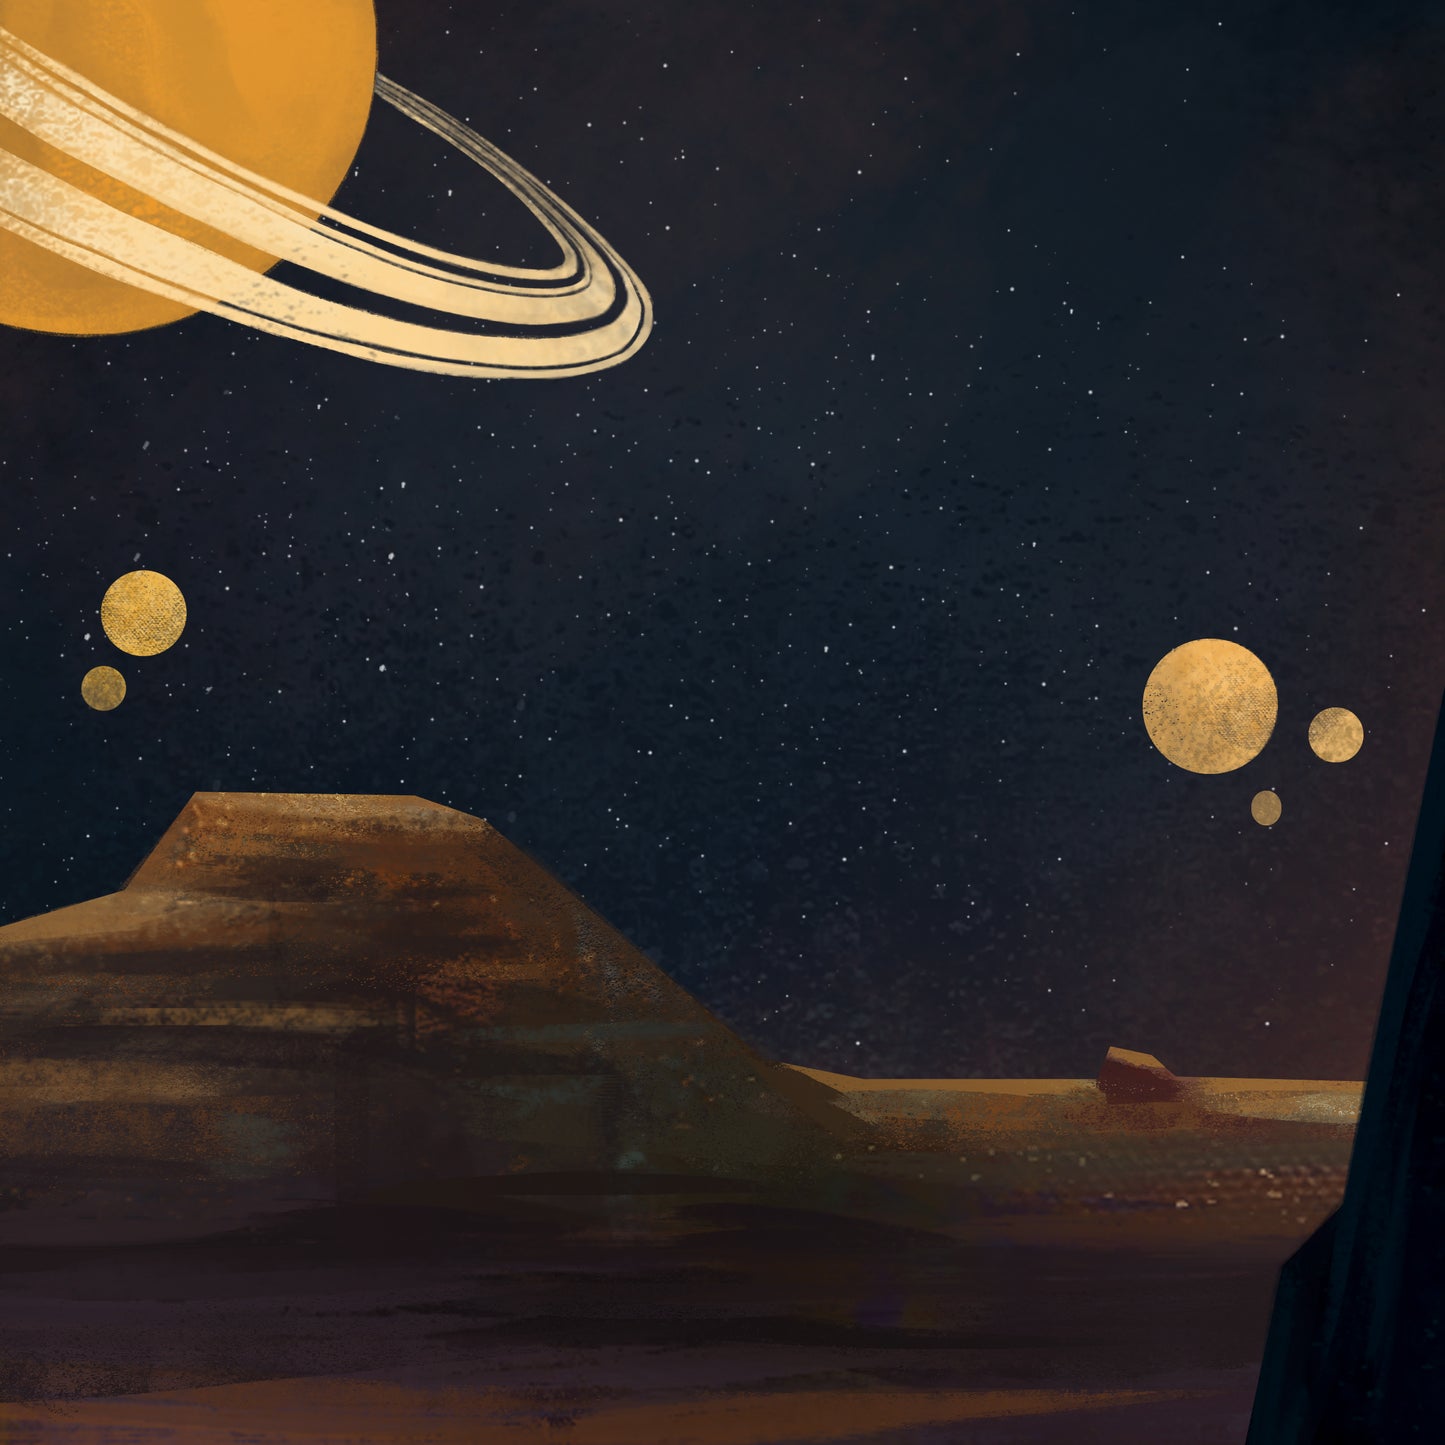 Saturn seen from Titan